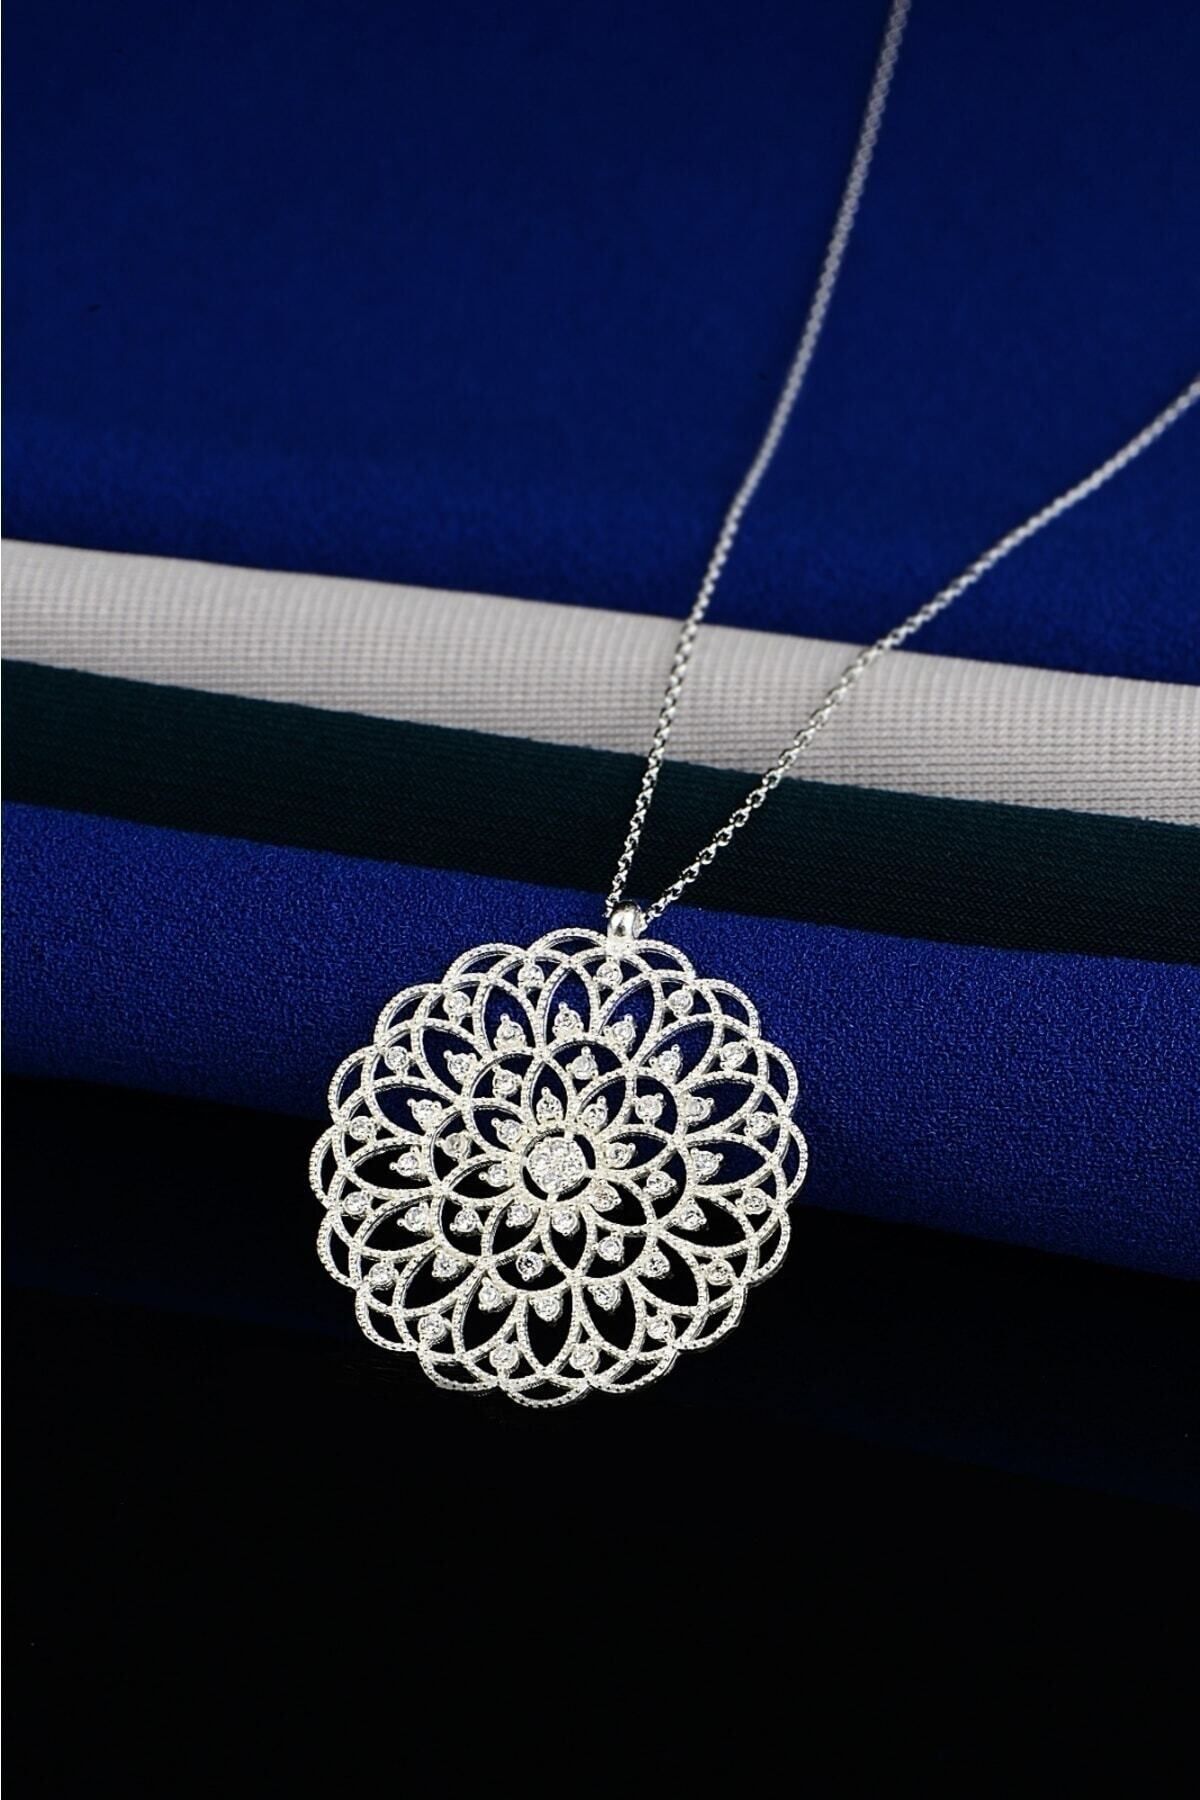 KAR DİAMOND 925 Ayar Gümüş Zincirli Zirkon Taşlı Yaşam Çiçeği Kolye - Sertifikalı